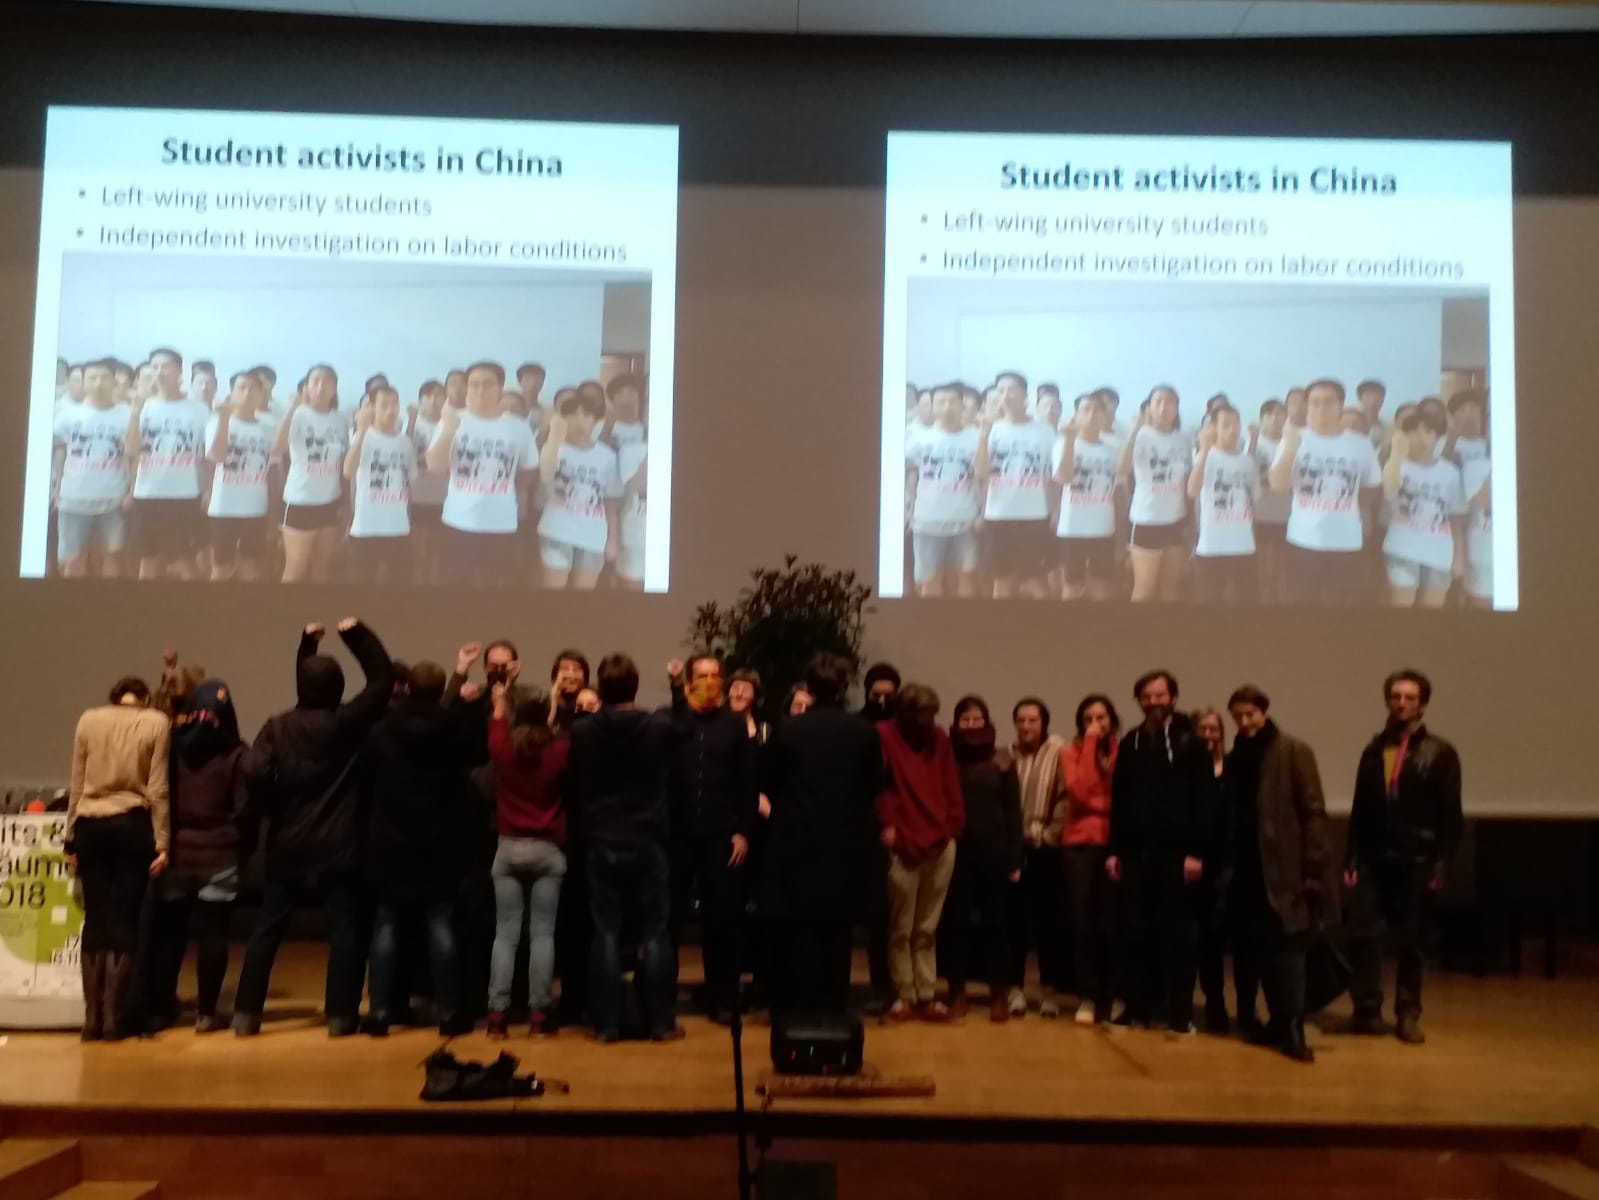 柏林科技大學研討會上20多位學者拍照支持佳士聲援團和被失蹤學生運動家.jpg